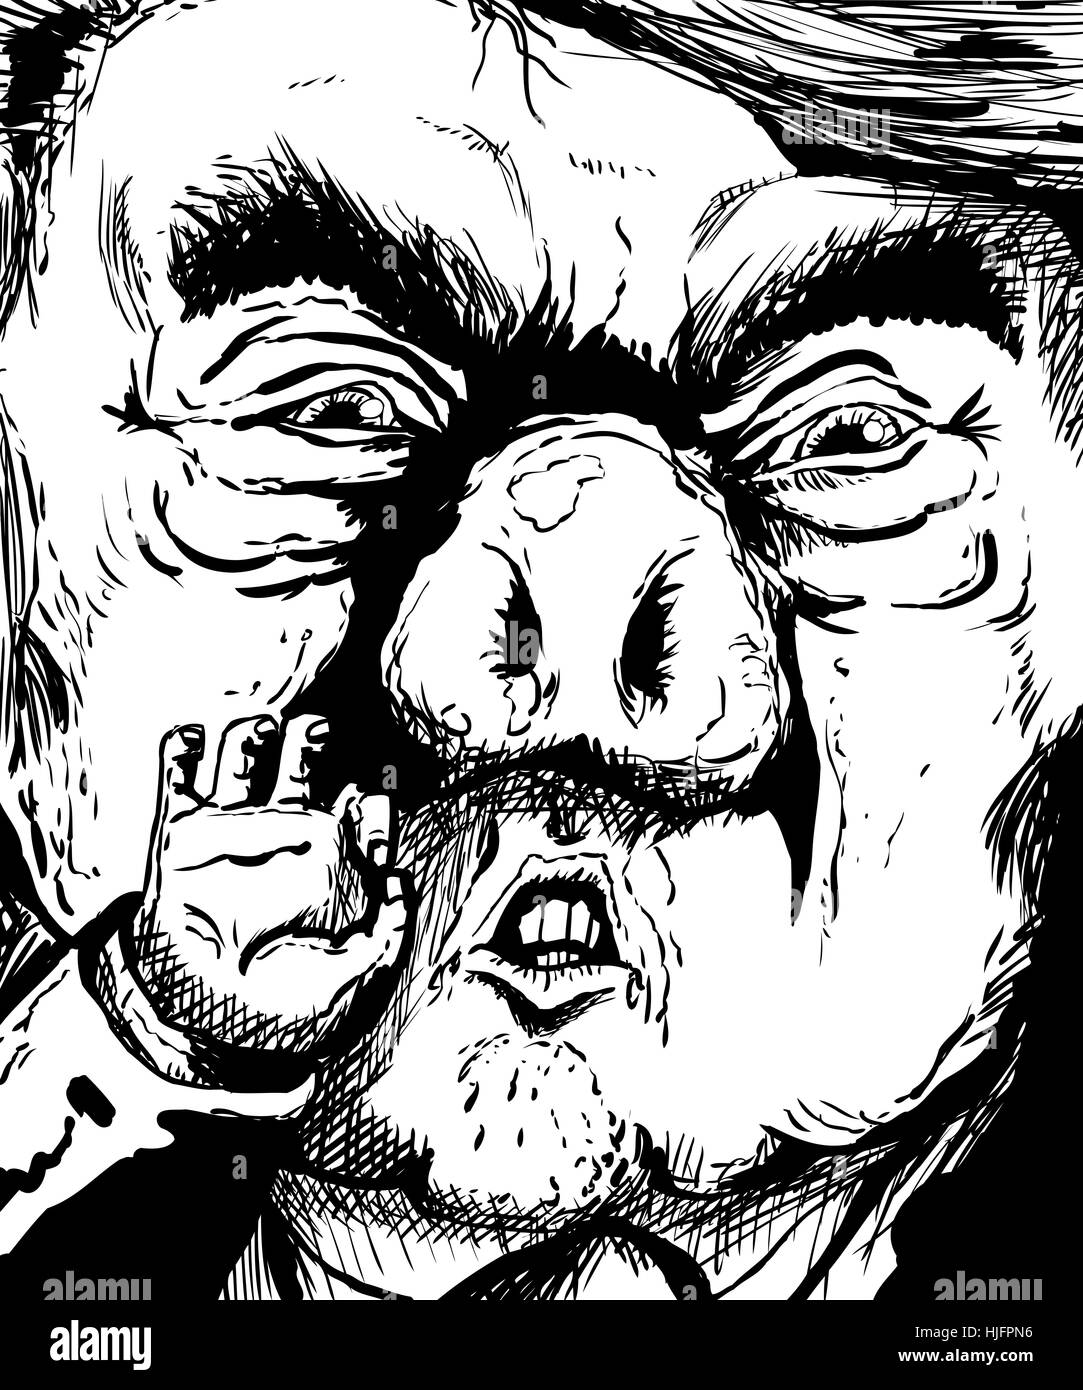 Il 23 gennaio 2017. Delineate la caricatura di Donald Trump con sporco a forma di porco di naso Foto Stock